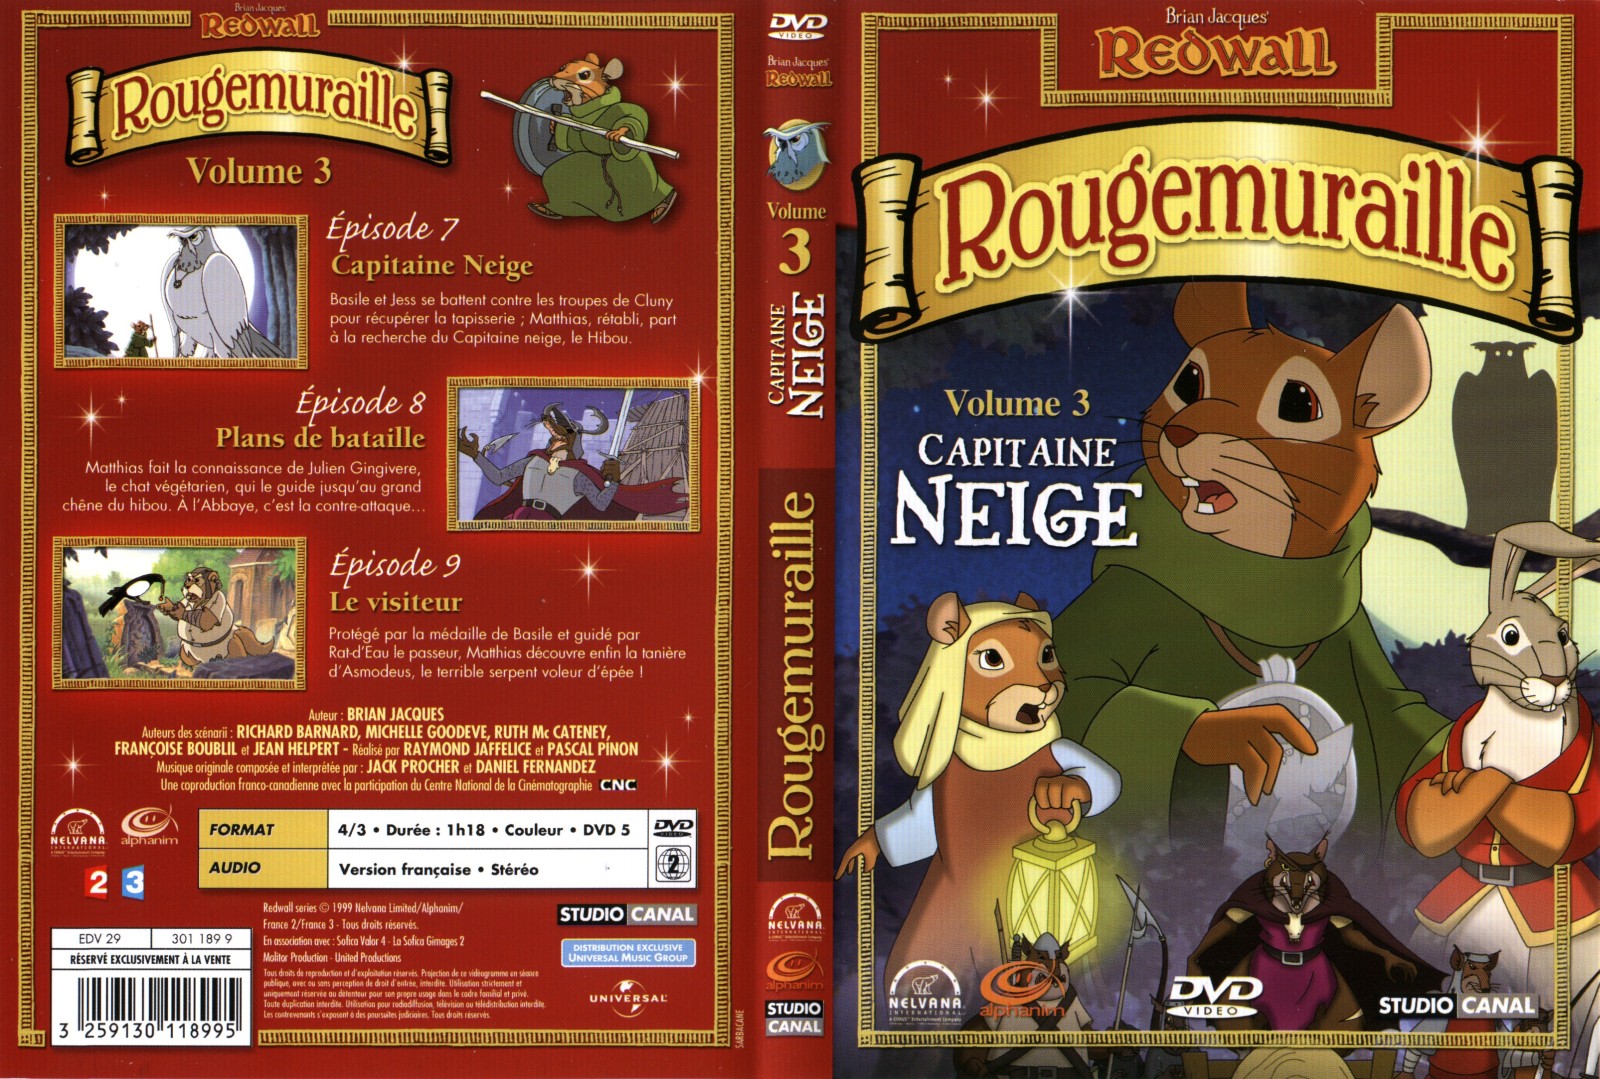 Jaquette DVD Rougemuraille vol 3